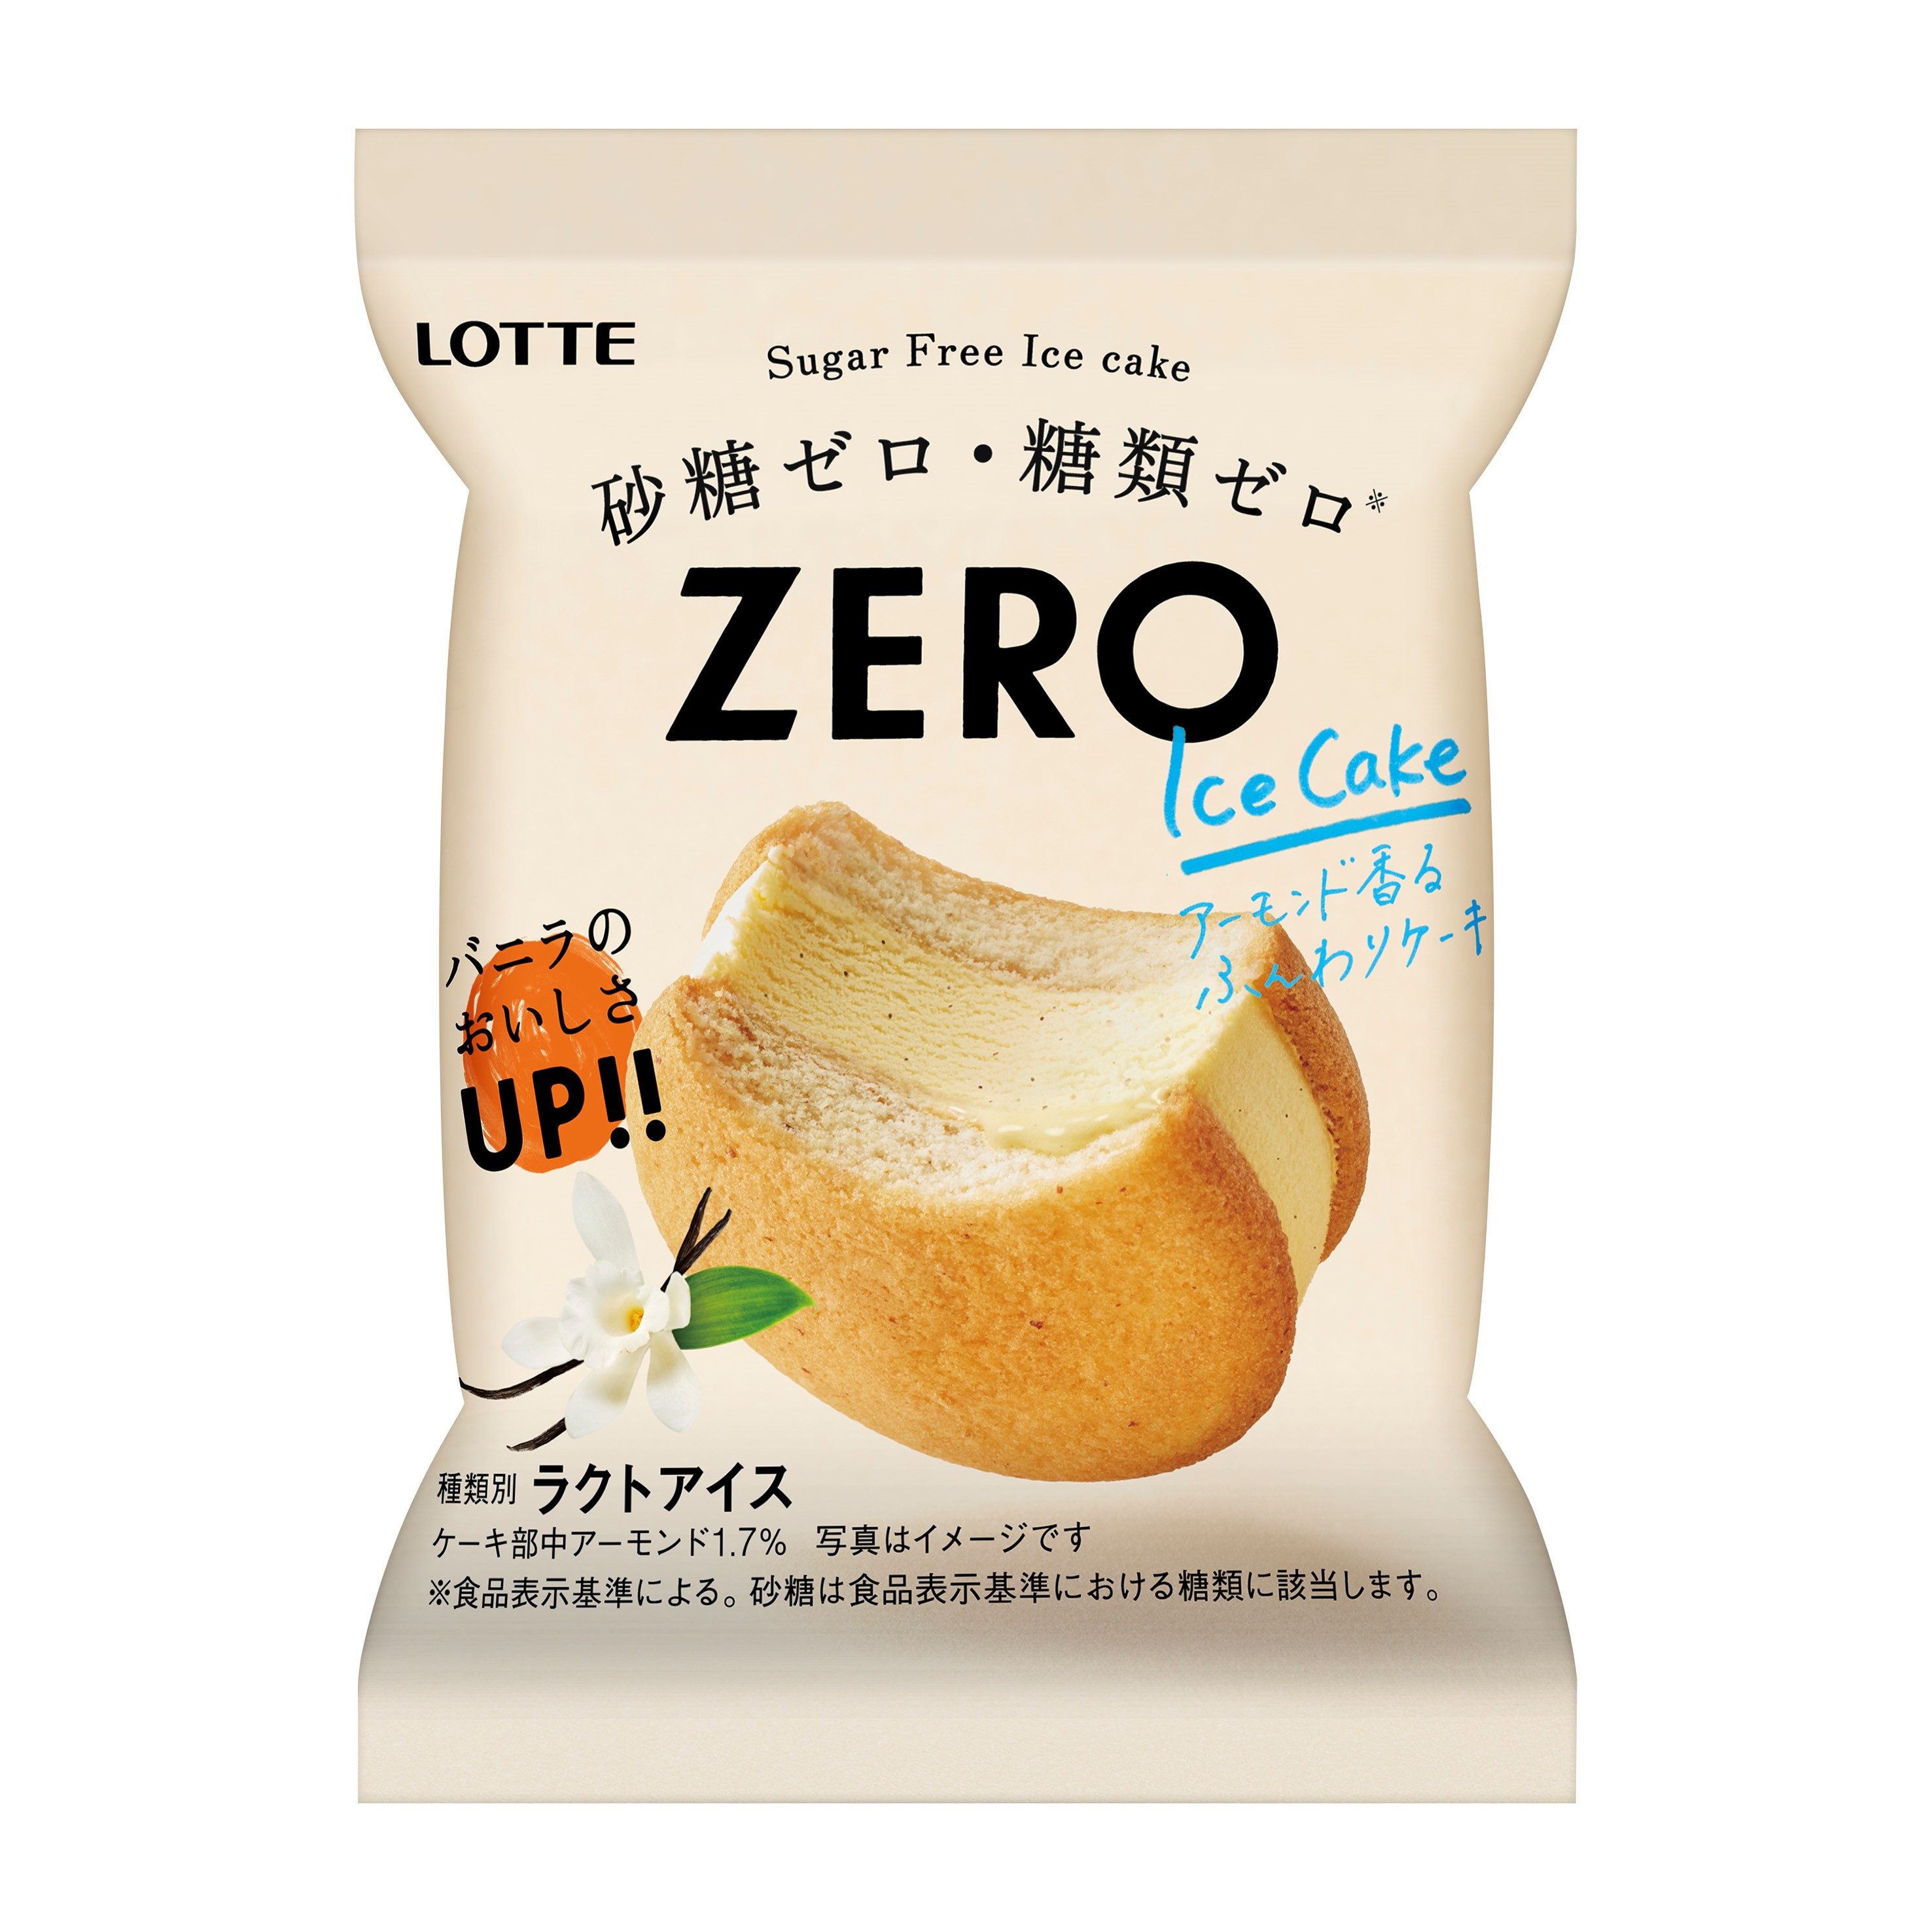 Zero アイスケーキ アイス お口の恋人 ロッテ